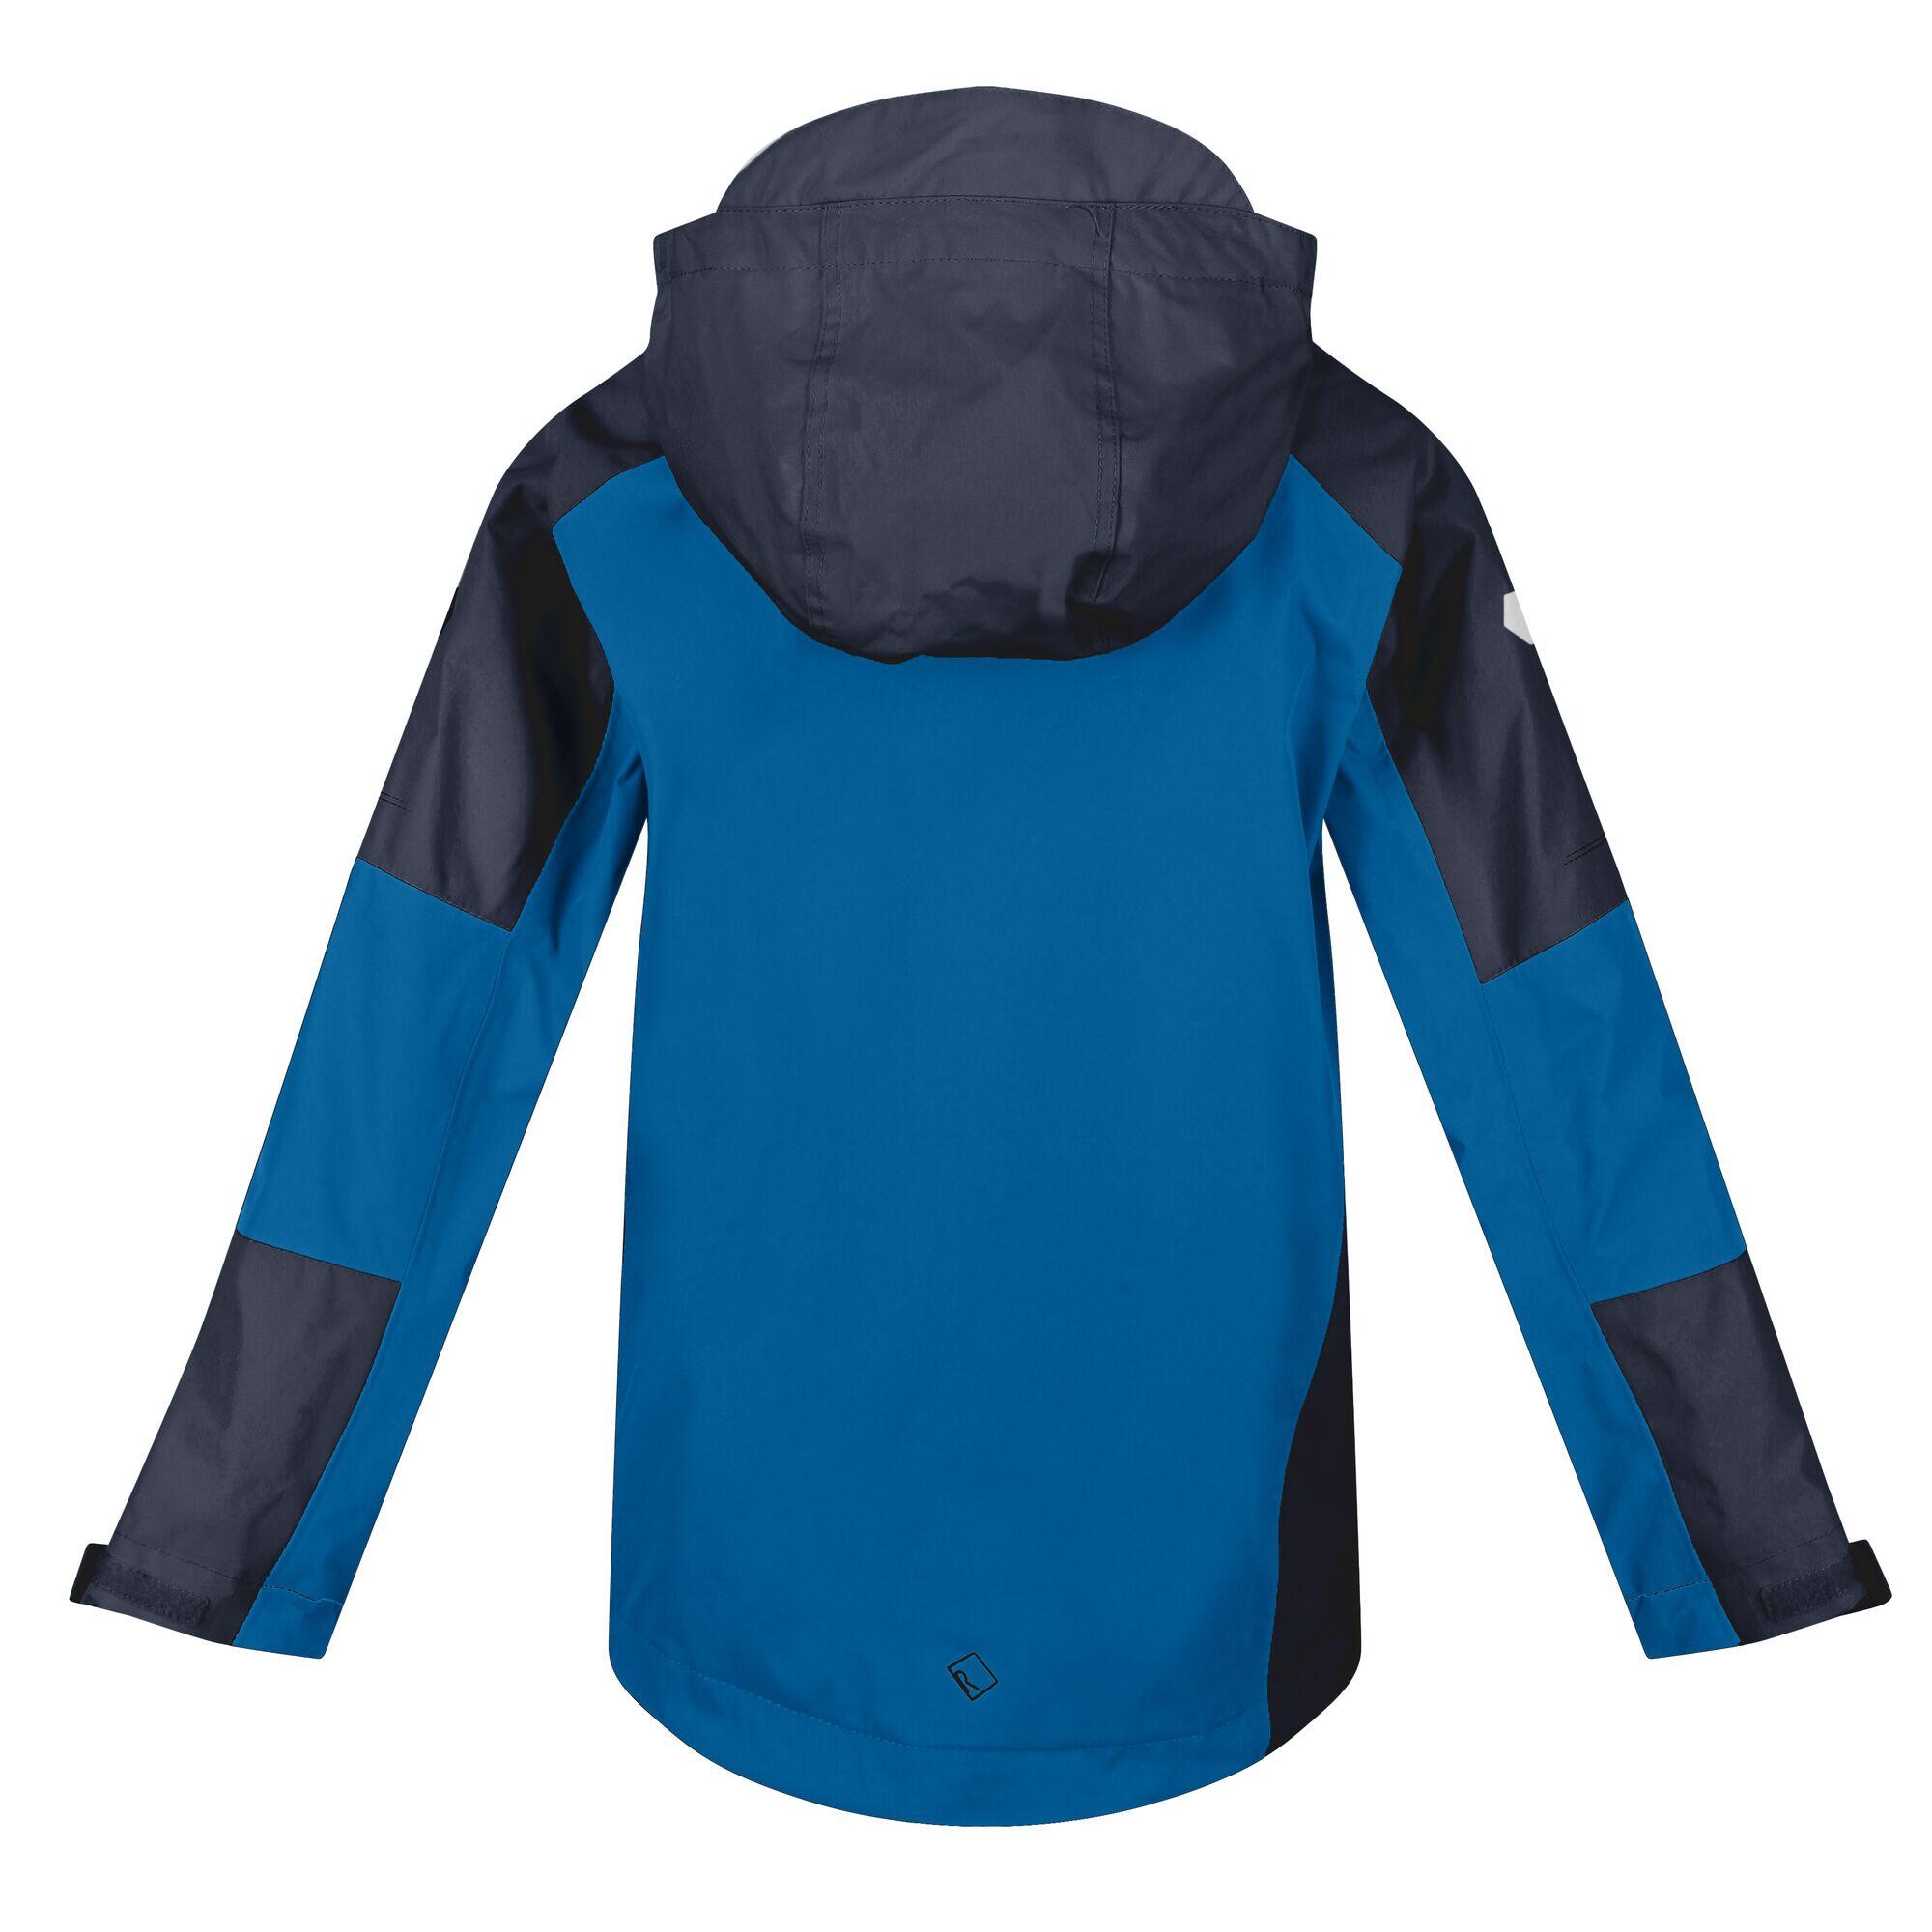 Childrens/Kids Calderdale II Waterproof Jacket (Imperial Blue/India Grey) 2/5